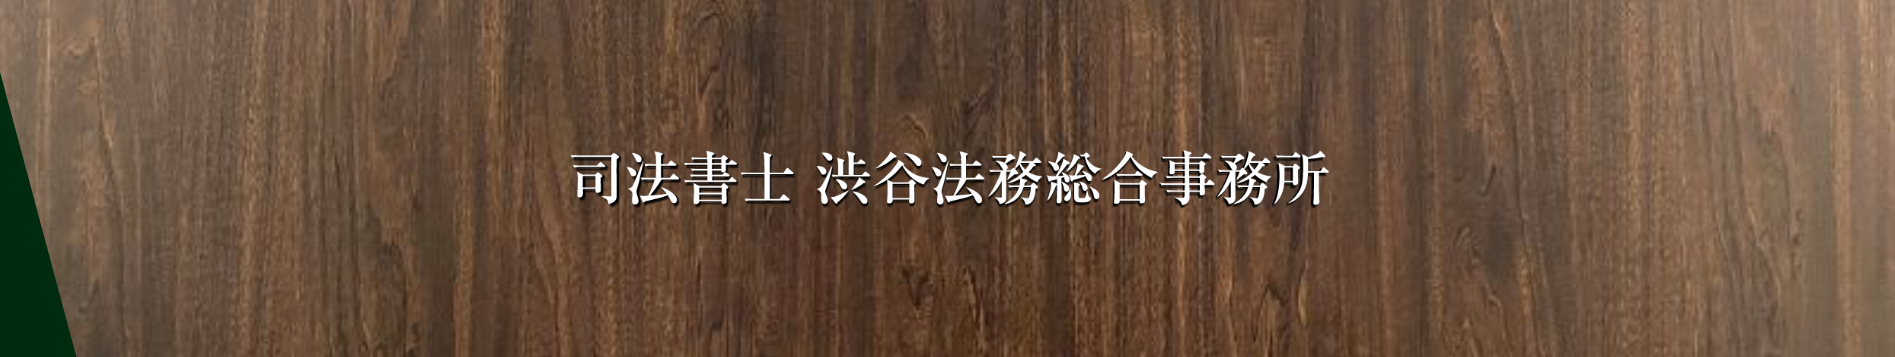 渋谷法務総合事務所のサイトトップ画像